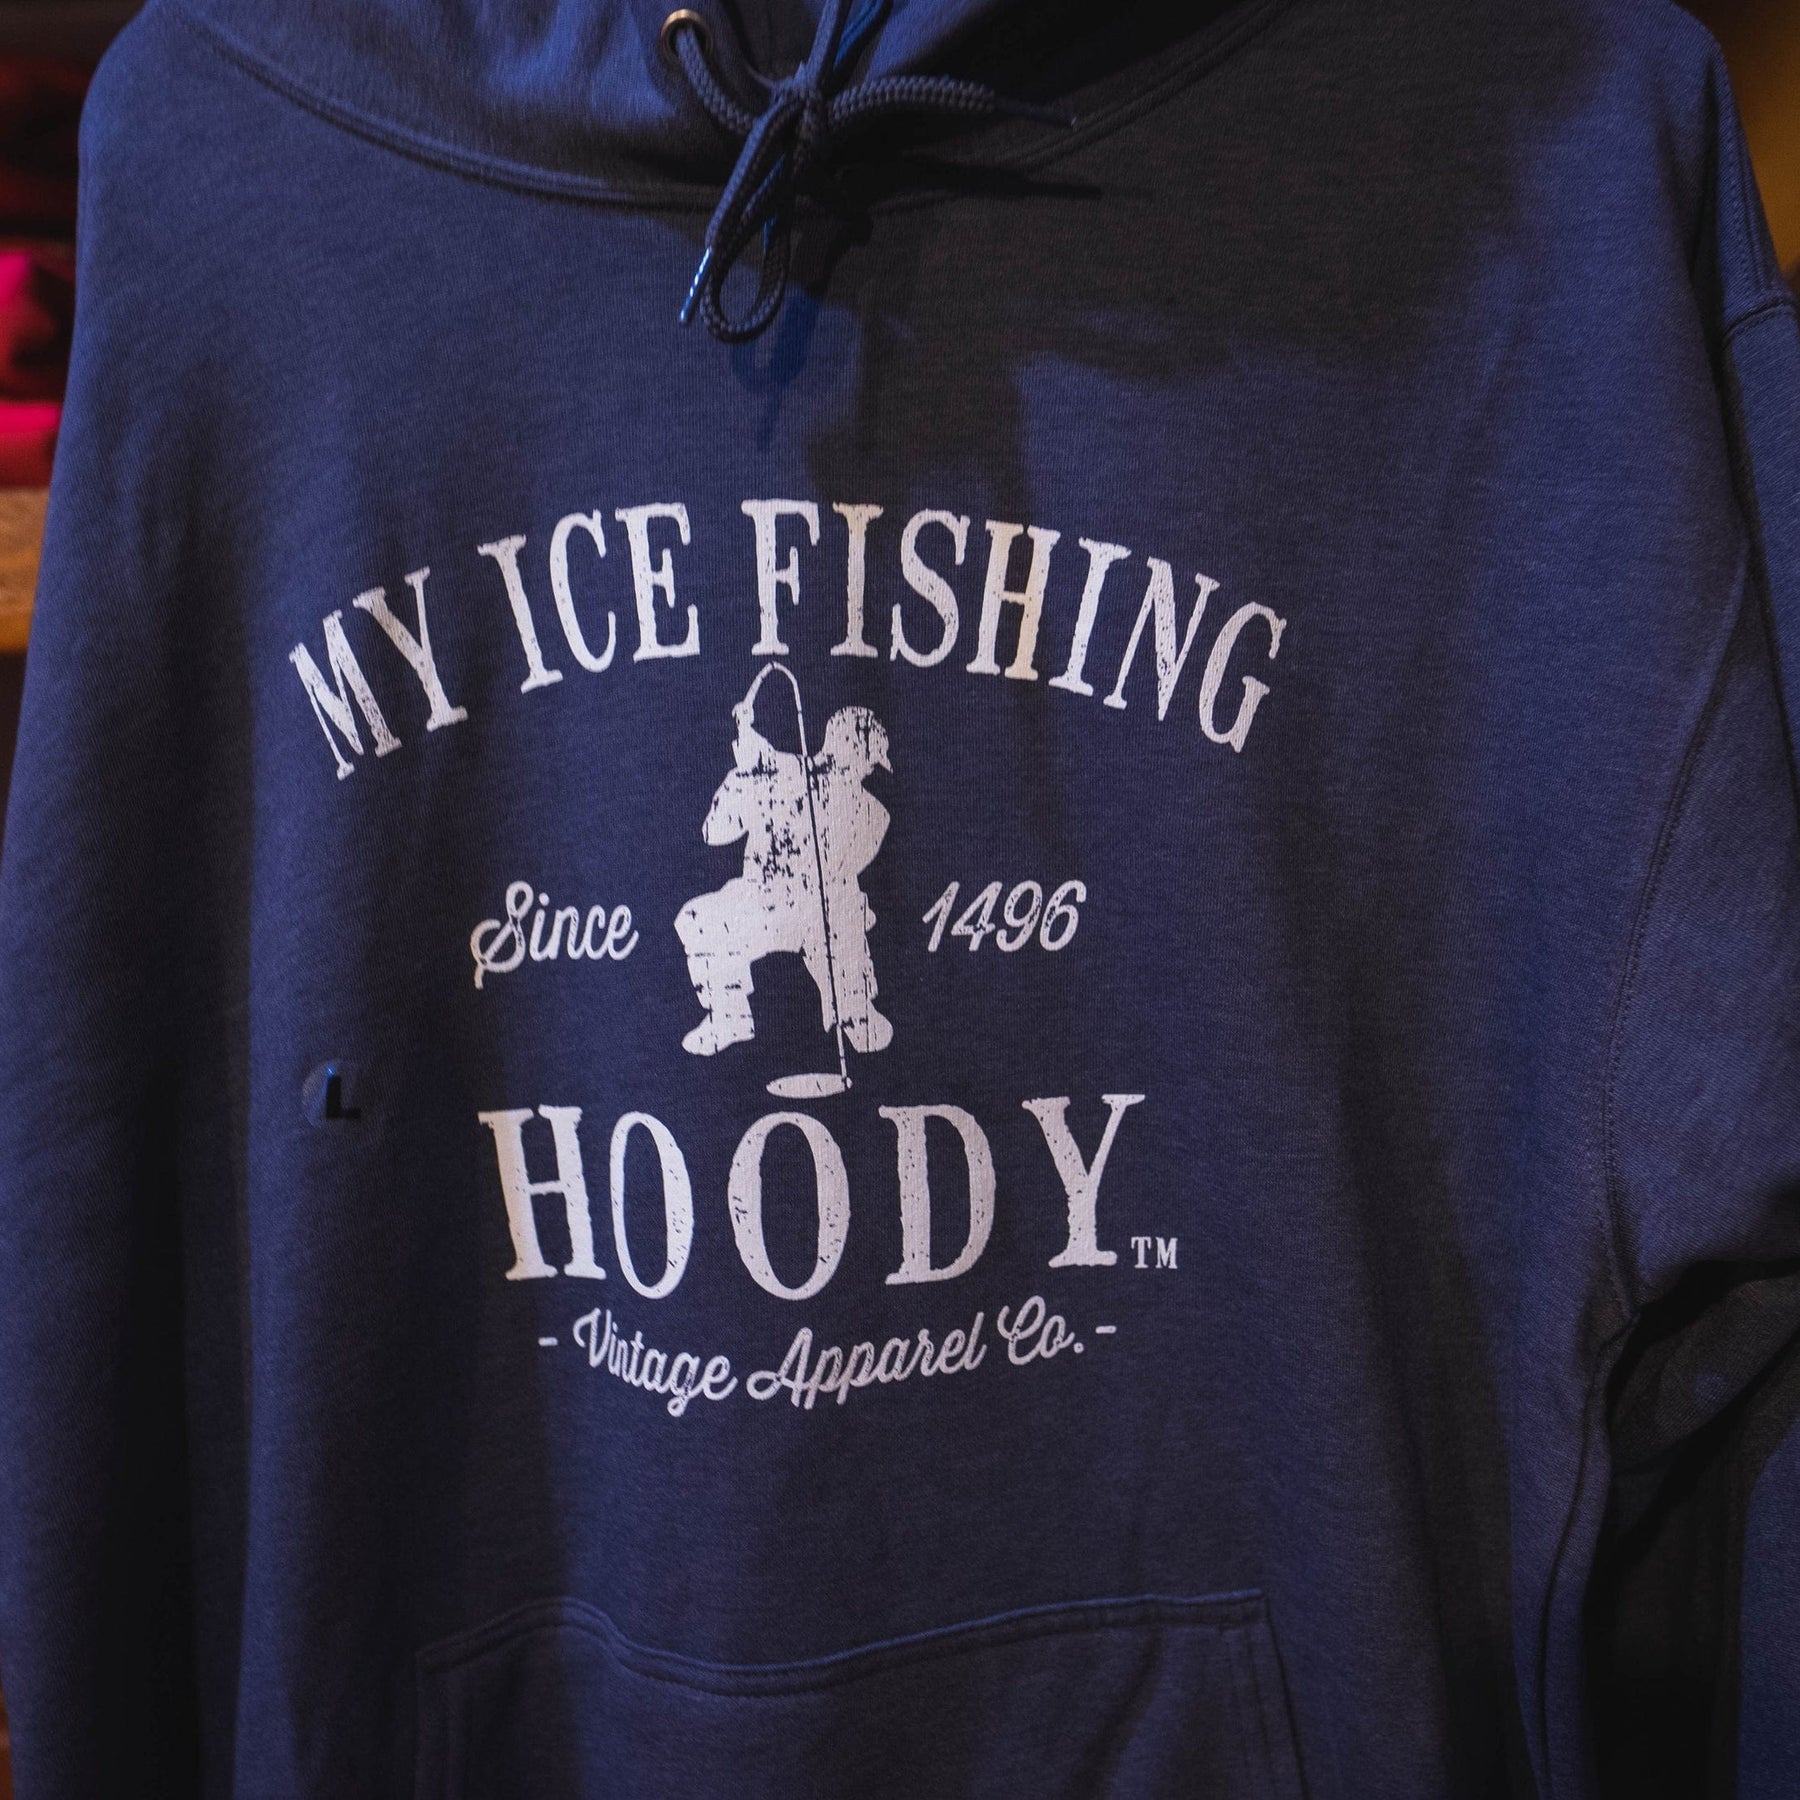 My Ice Fishing Hoody – The Muskoka Store